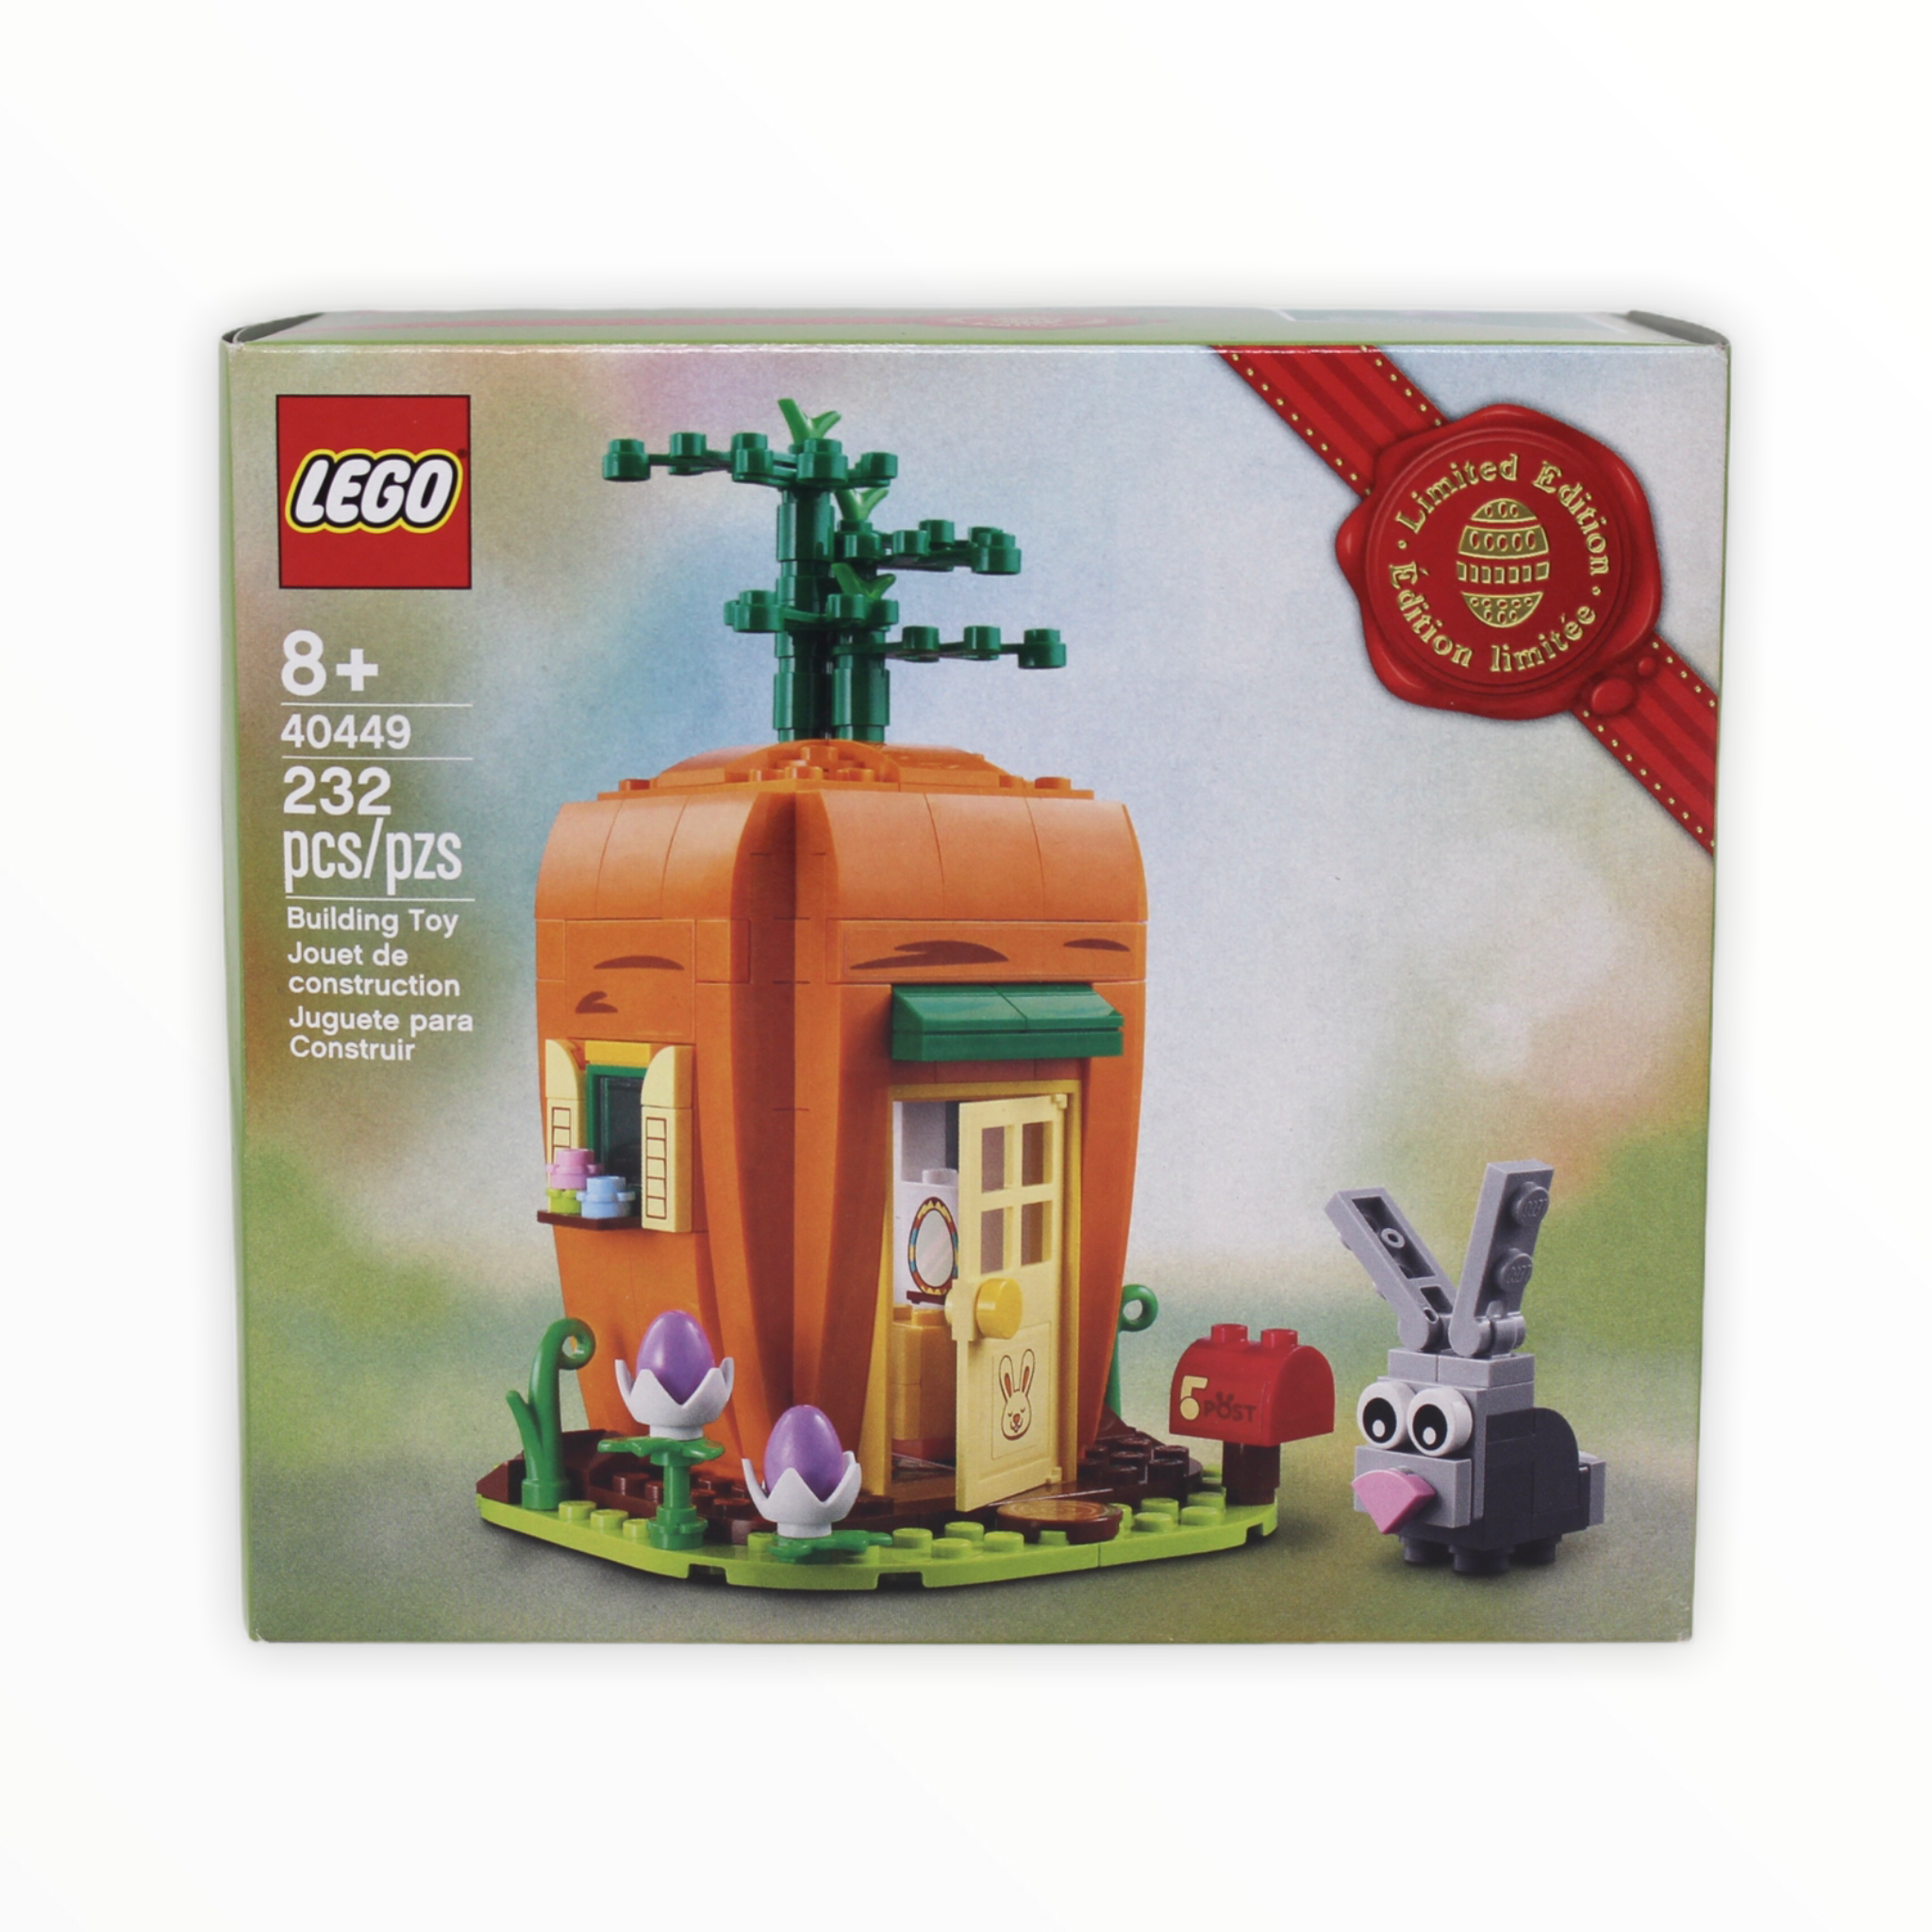 Retired Set 40449 LEGO Easter Bunny’s Carrot House